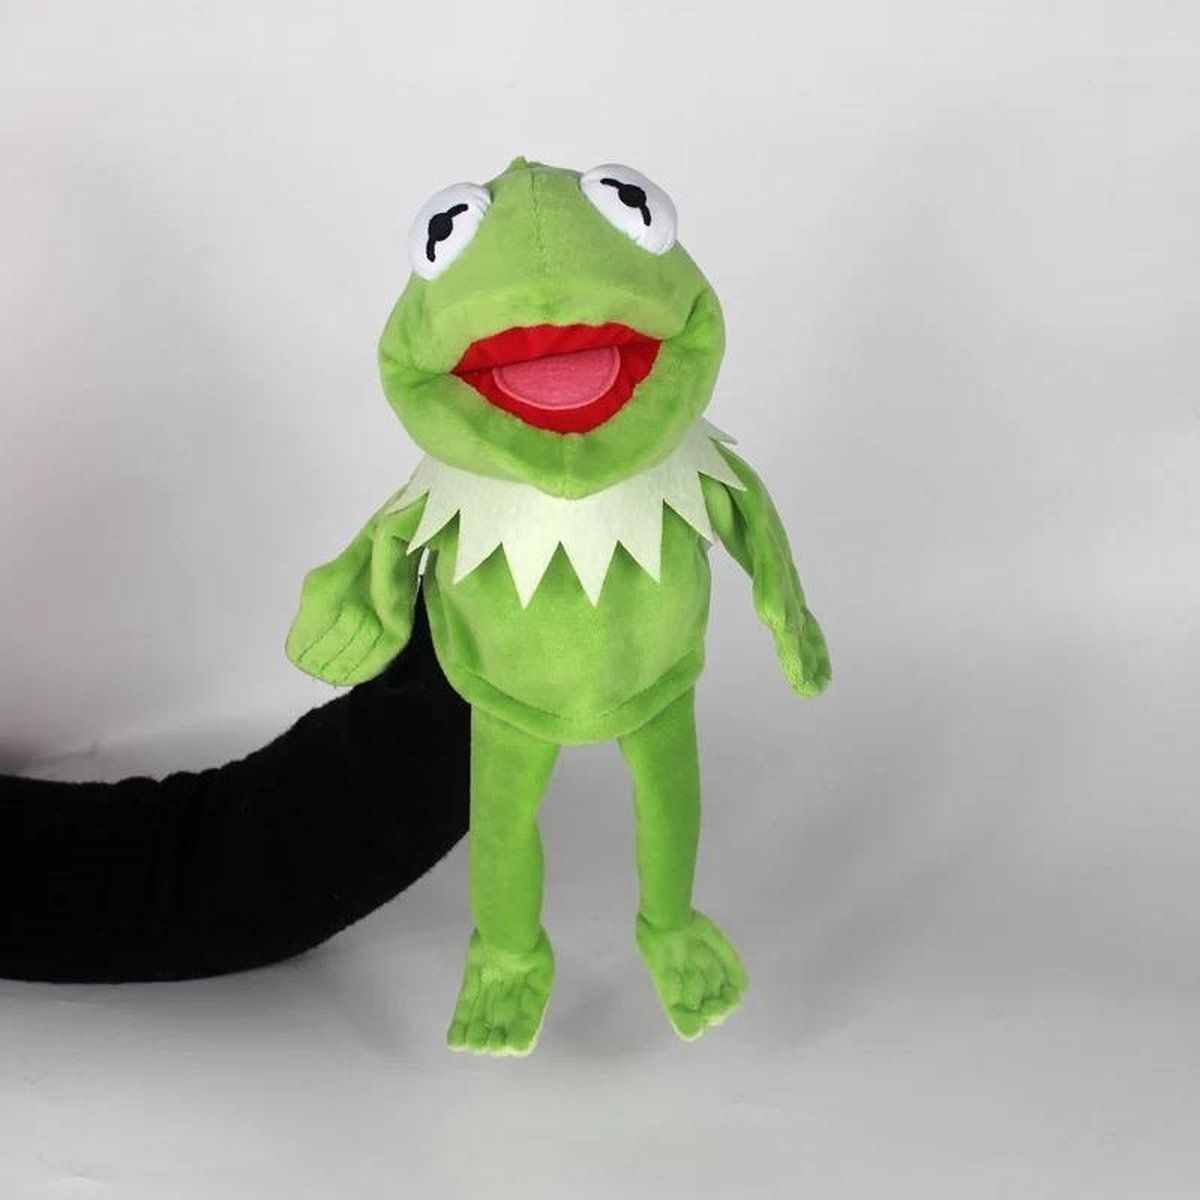 bol.com | Kermit de kikker handpop - The muppetshow - 33 cm - Knuffel